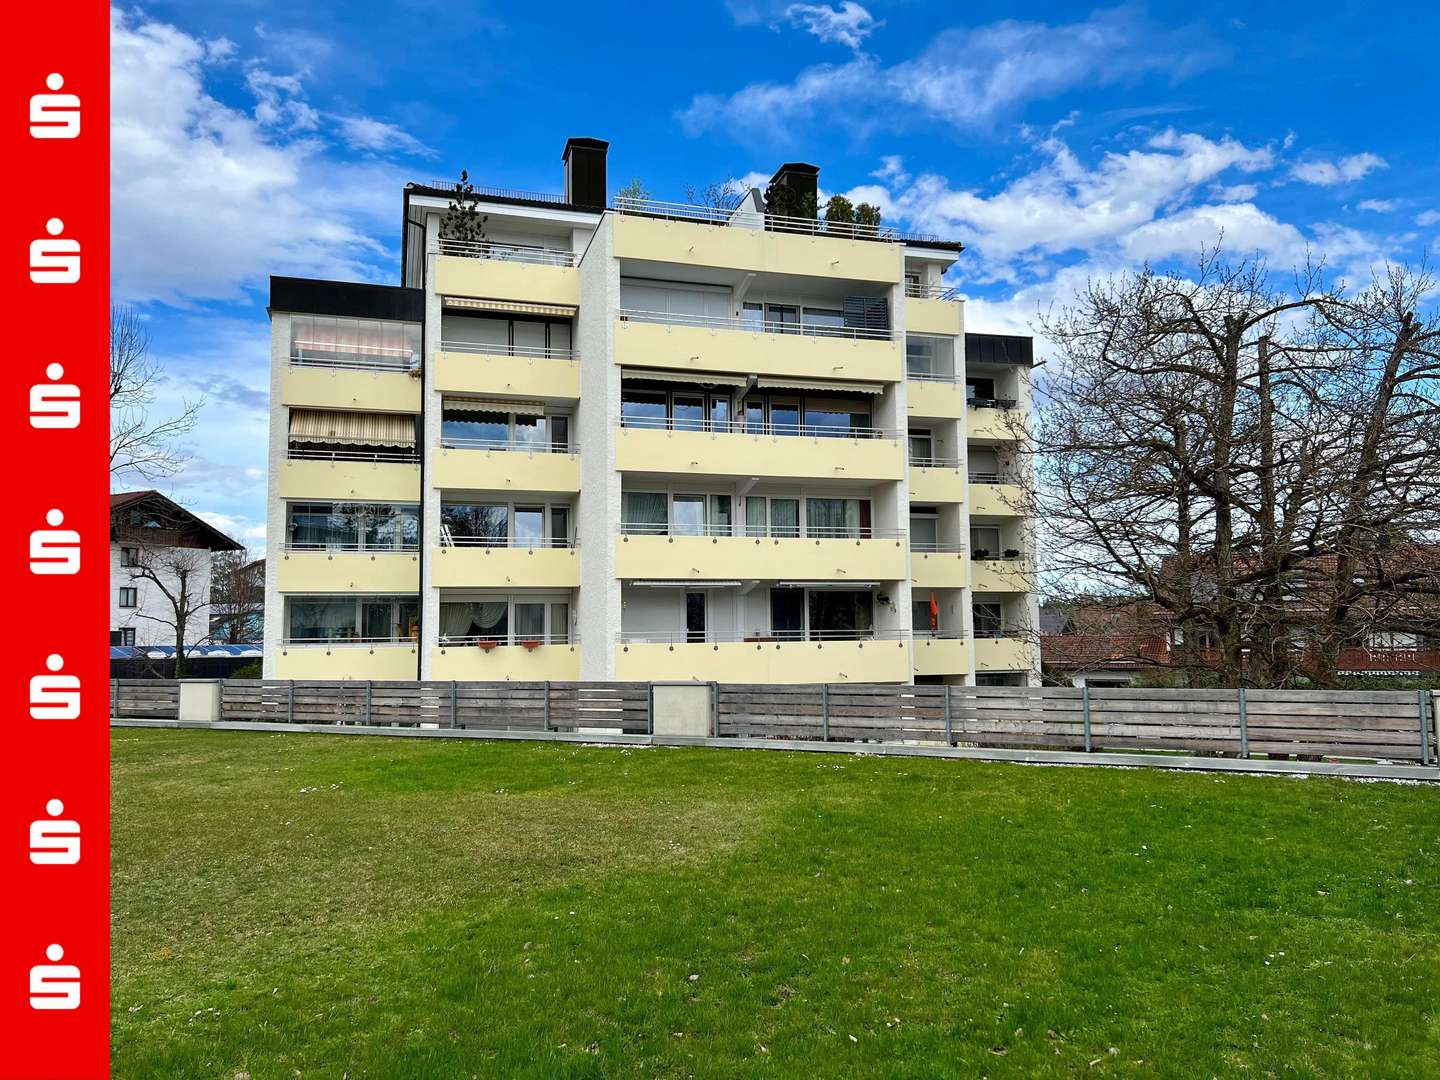 IMG_2770 - Etagenwohnung in 82515 Wolfratshausen mit 37m² kaufen